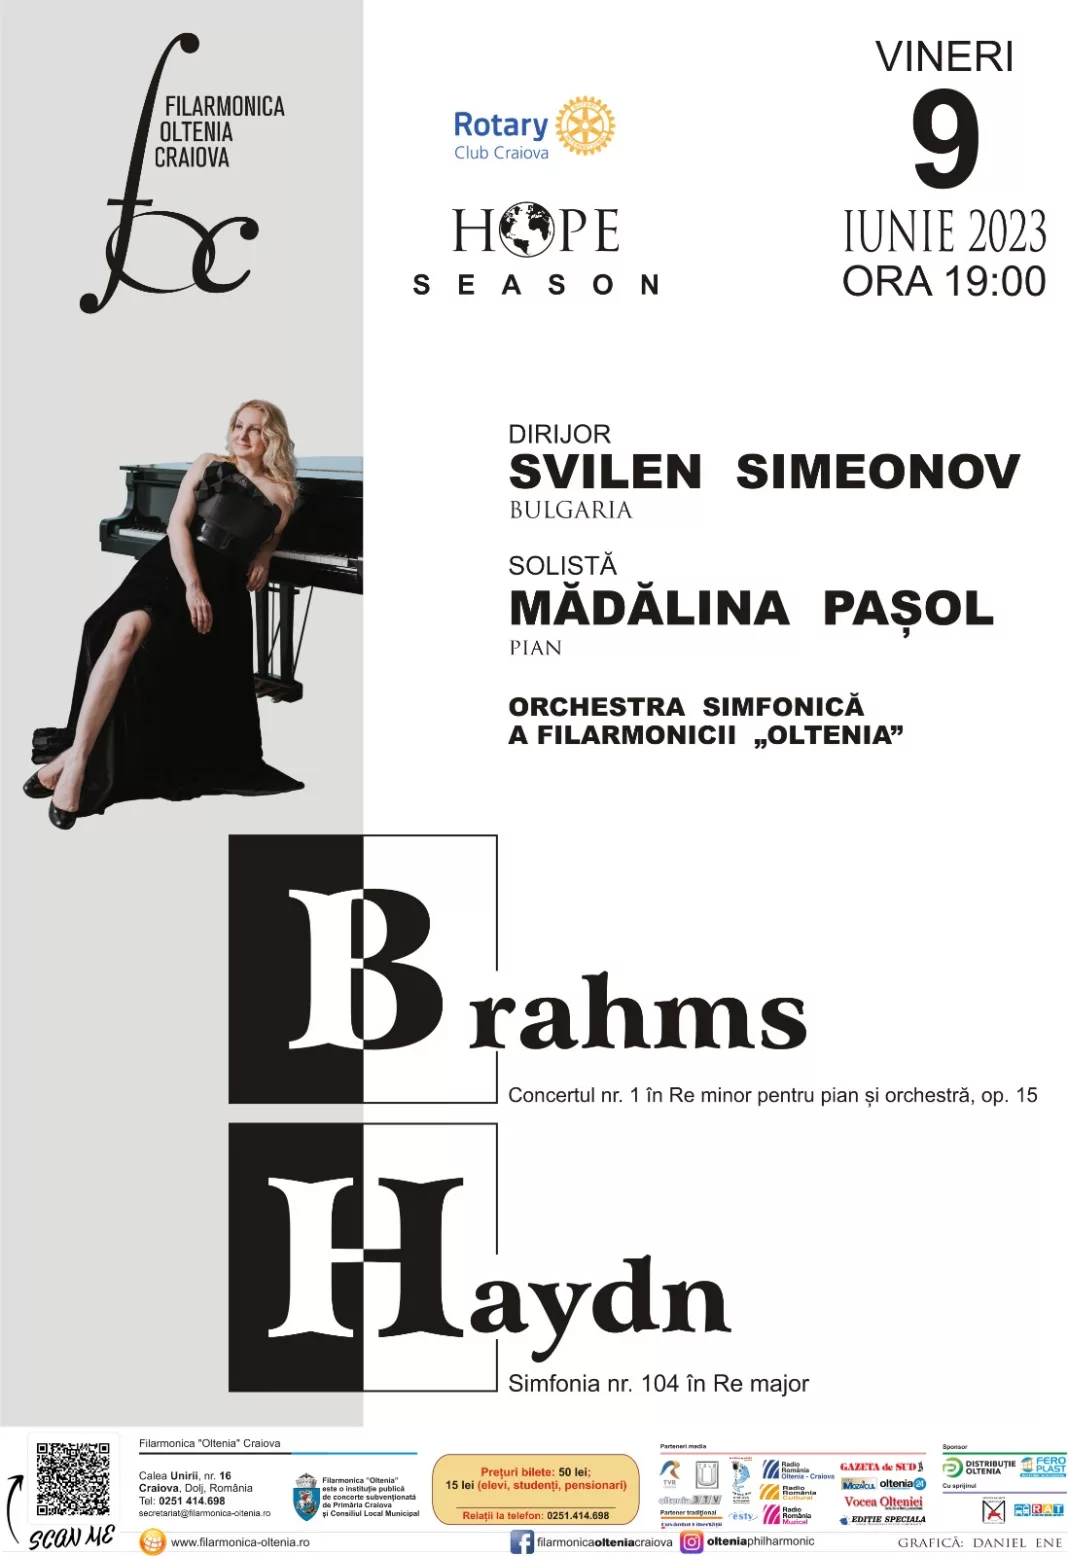 Orchestra Simfonică a Filarmonicii “Oltenia” va susţine vineri, de la ora 19.00, un Concert Brahms-Haydn, dirijor Svilen Simeonov, Bulgaria